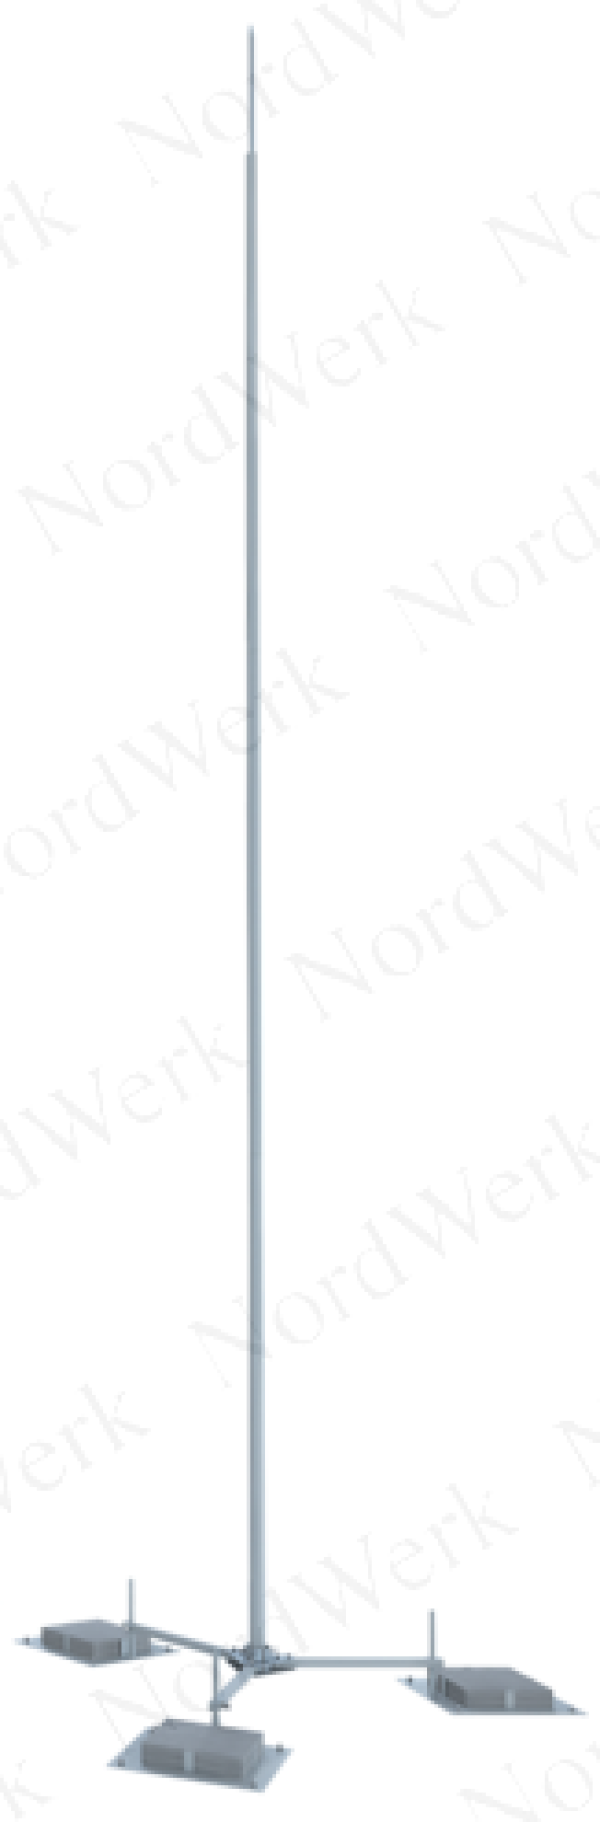 NordWerk МСАП-М-3,6-П – Молниеотвод высотой 3,6 метров (алюминий; с основанием под плитку)